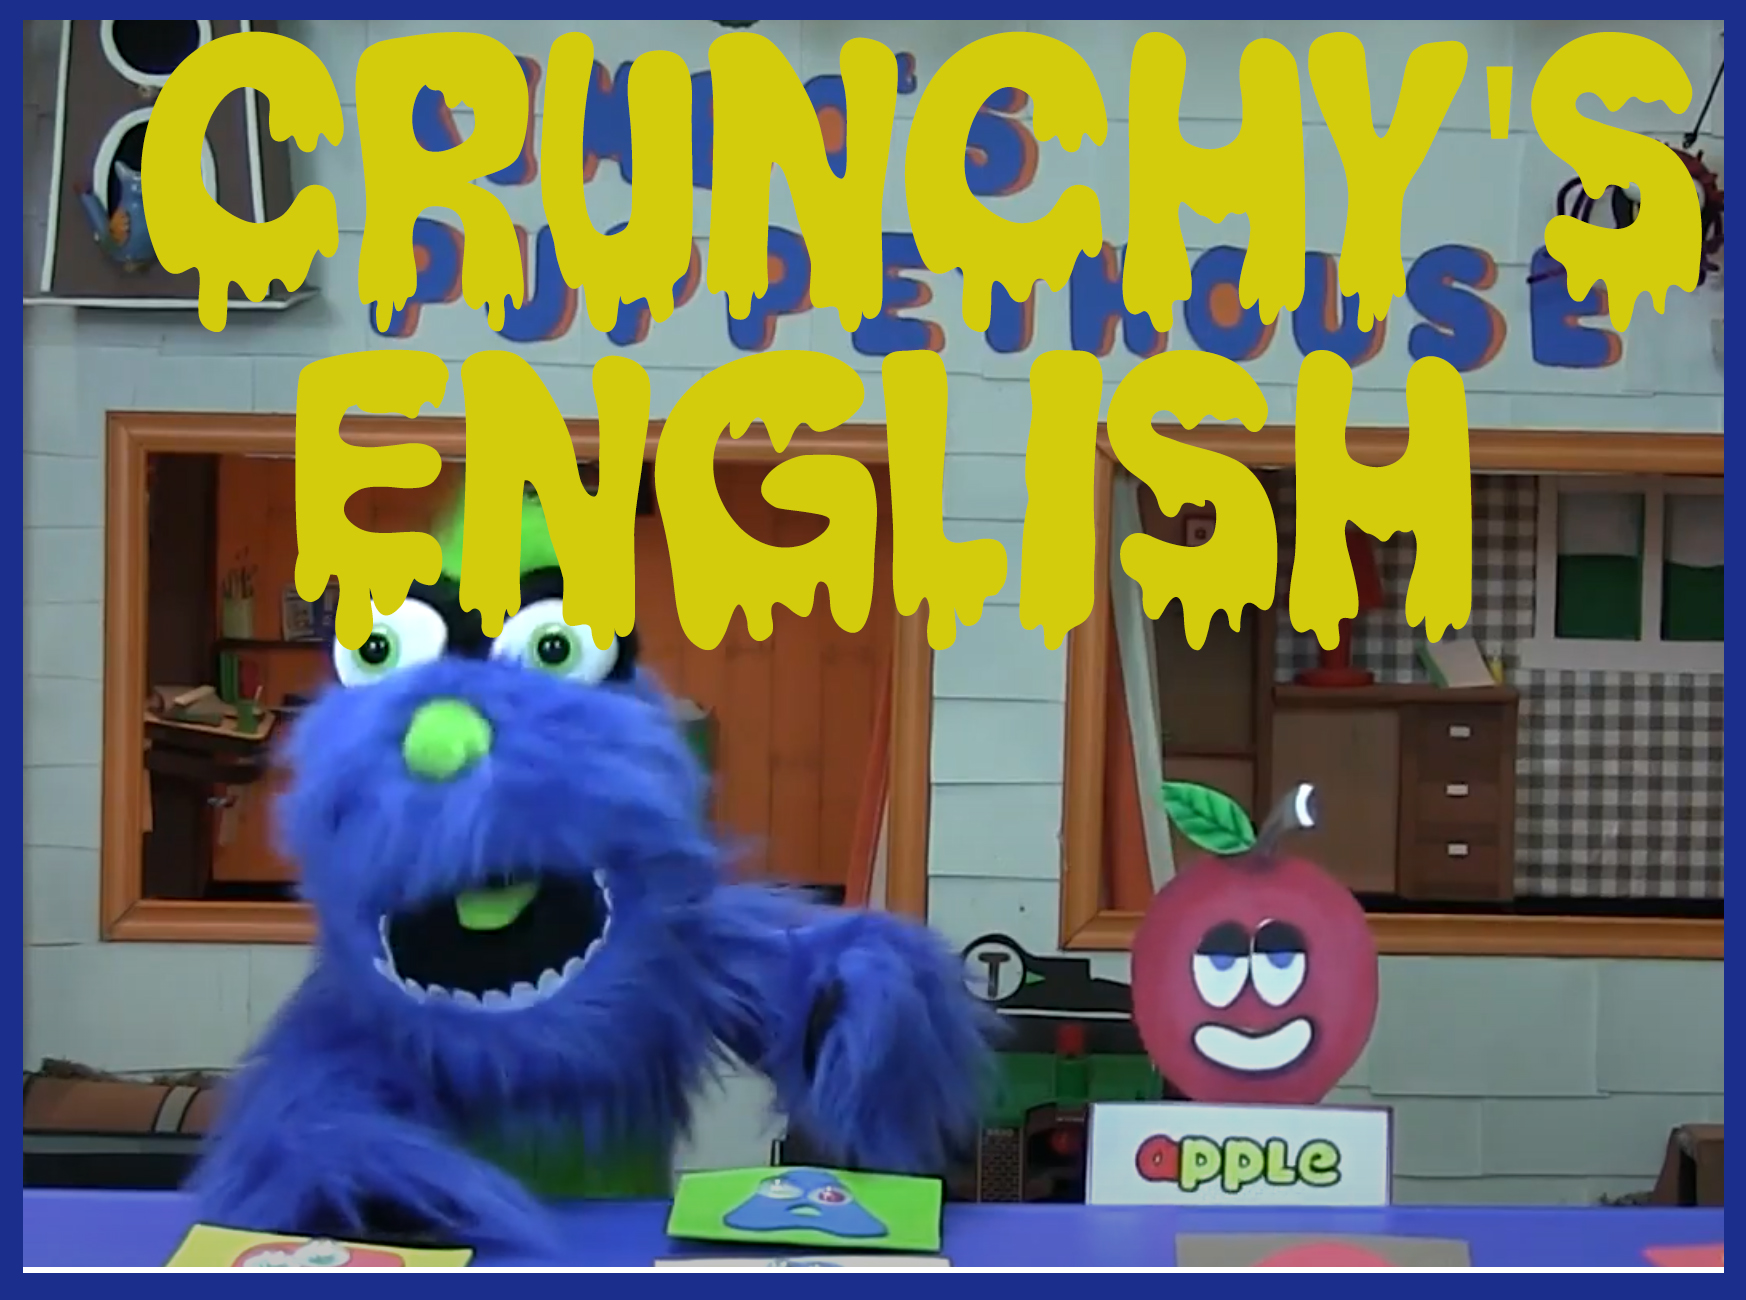 Crunchy's classes